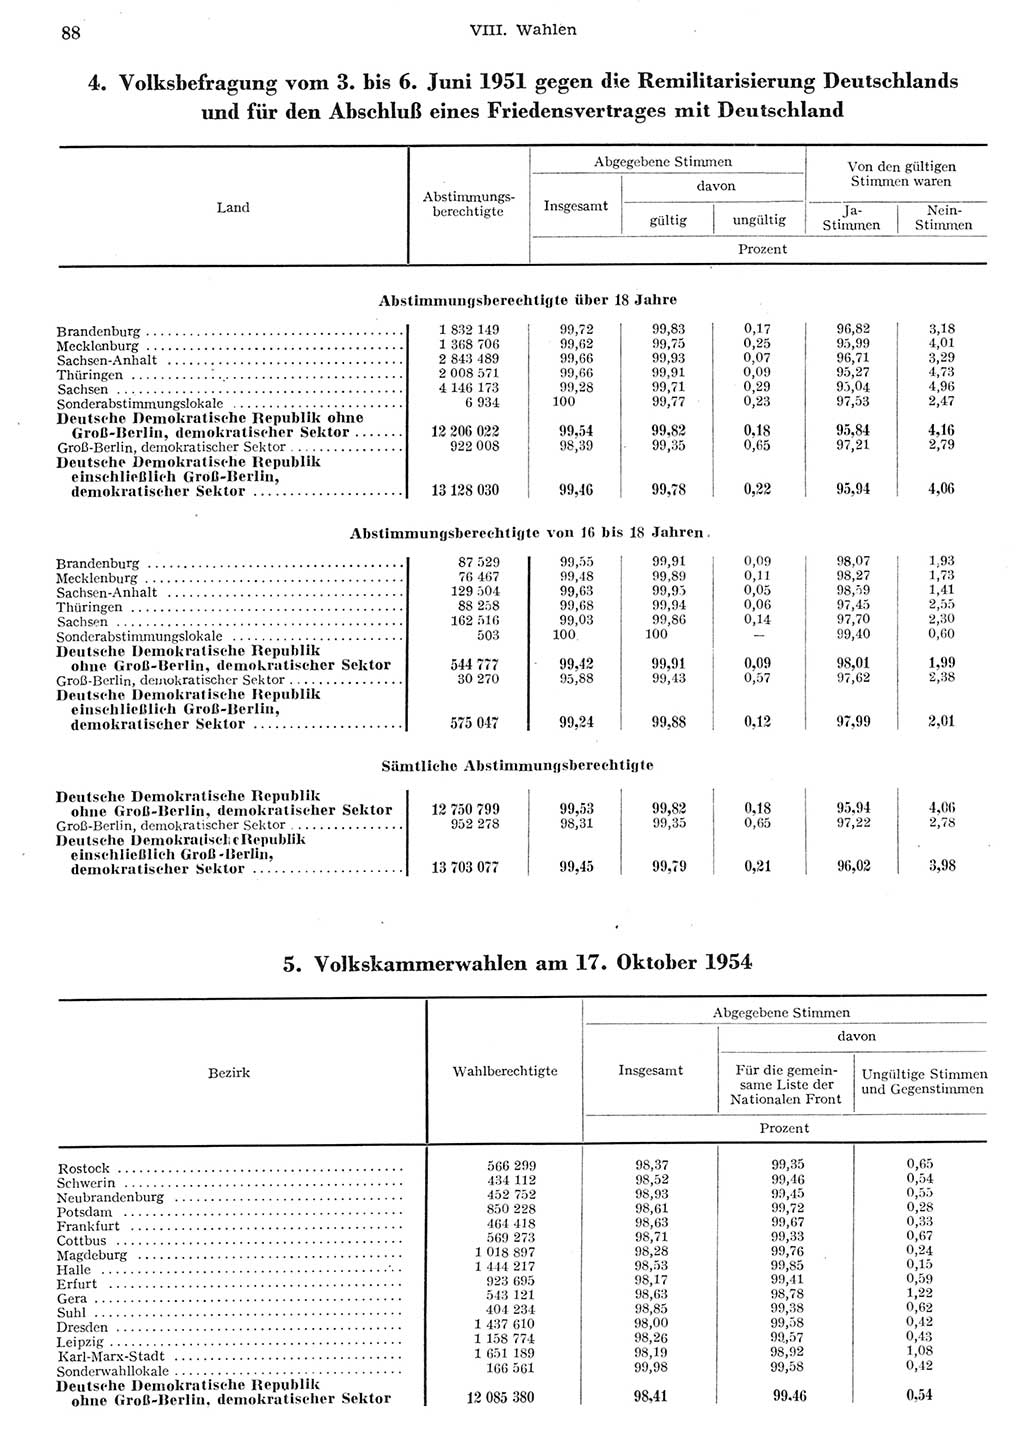 Statistisches Jahrbuch der Deutschen Demokratischen Republik (DDR) 1955, Seite 88 (Stat. Jb. DDR 1955, S. 88)